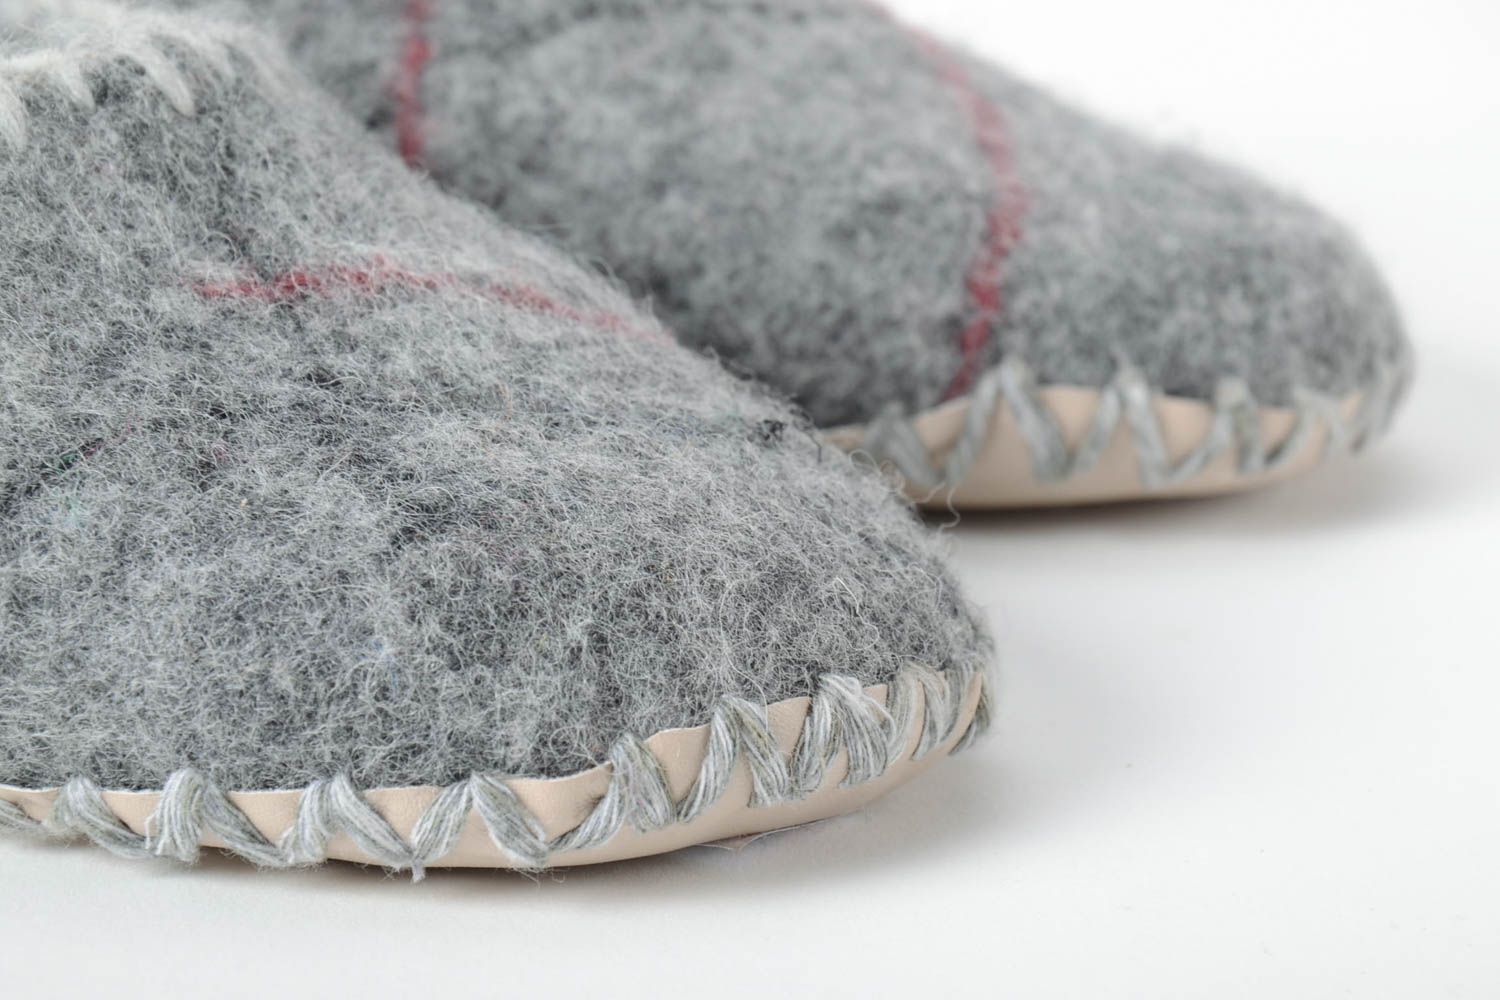 Handmade Hausschuhe Filz Damen Pantoffeln warme Hausschuhe gefilzt grau toll foto 5